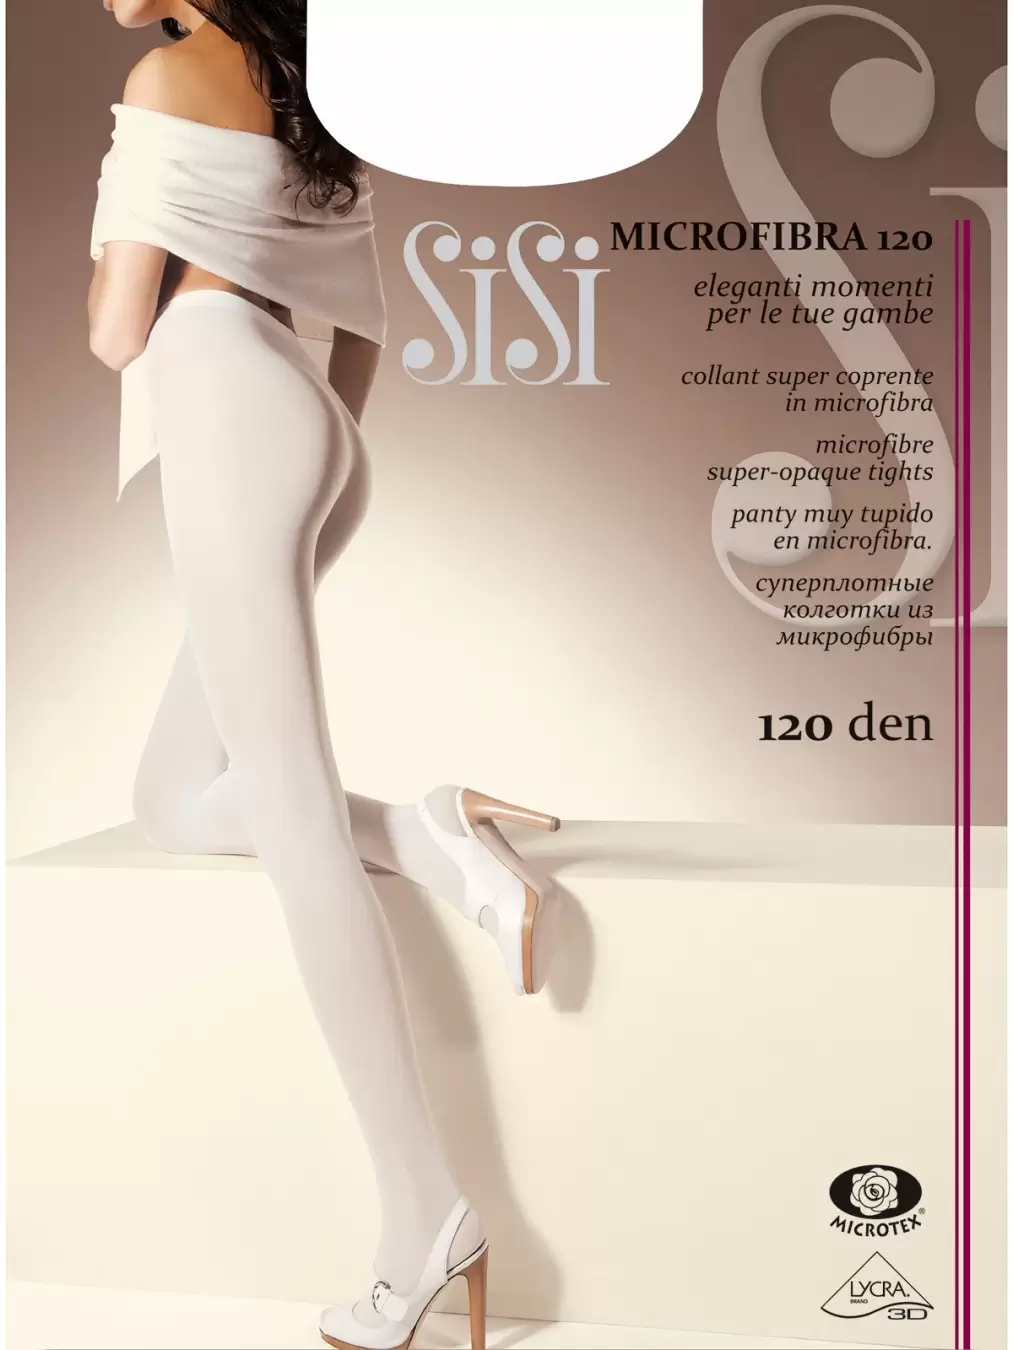 SiSi MICROFIBRA 120, женские колготки (изображение 1)